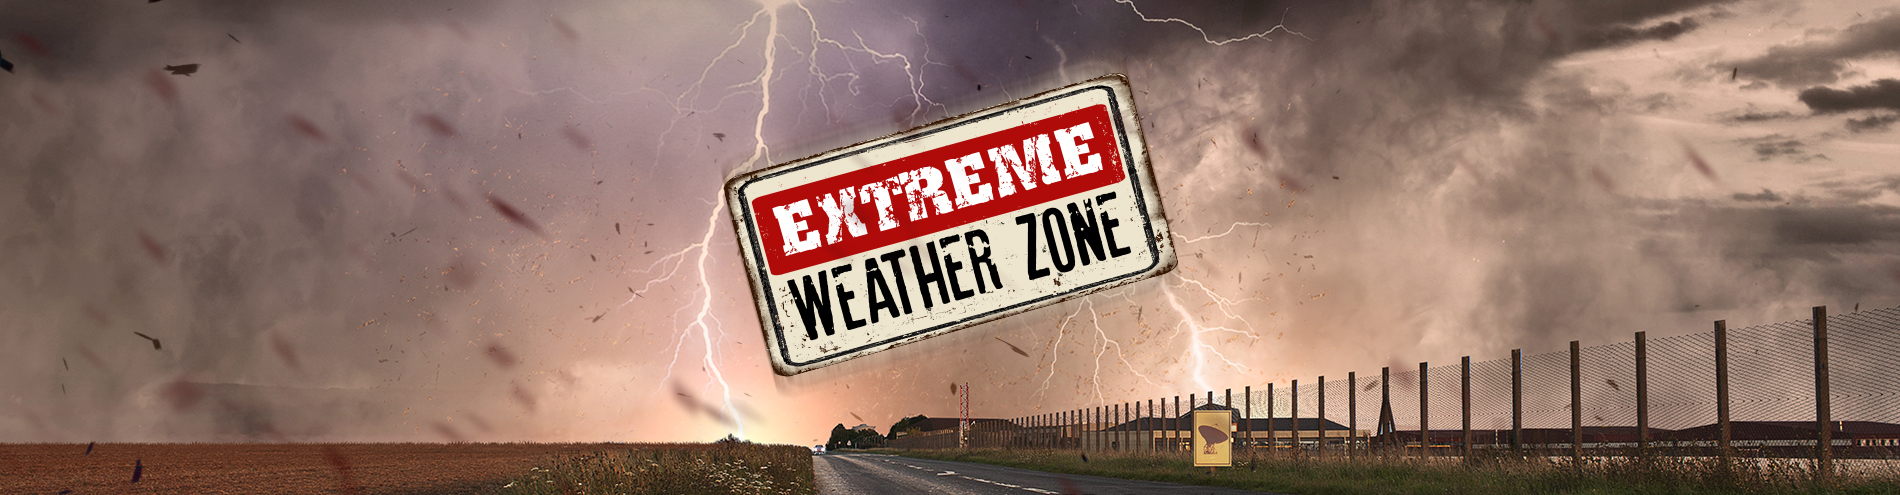 Extreme Weather Zone Web Slider